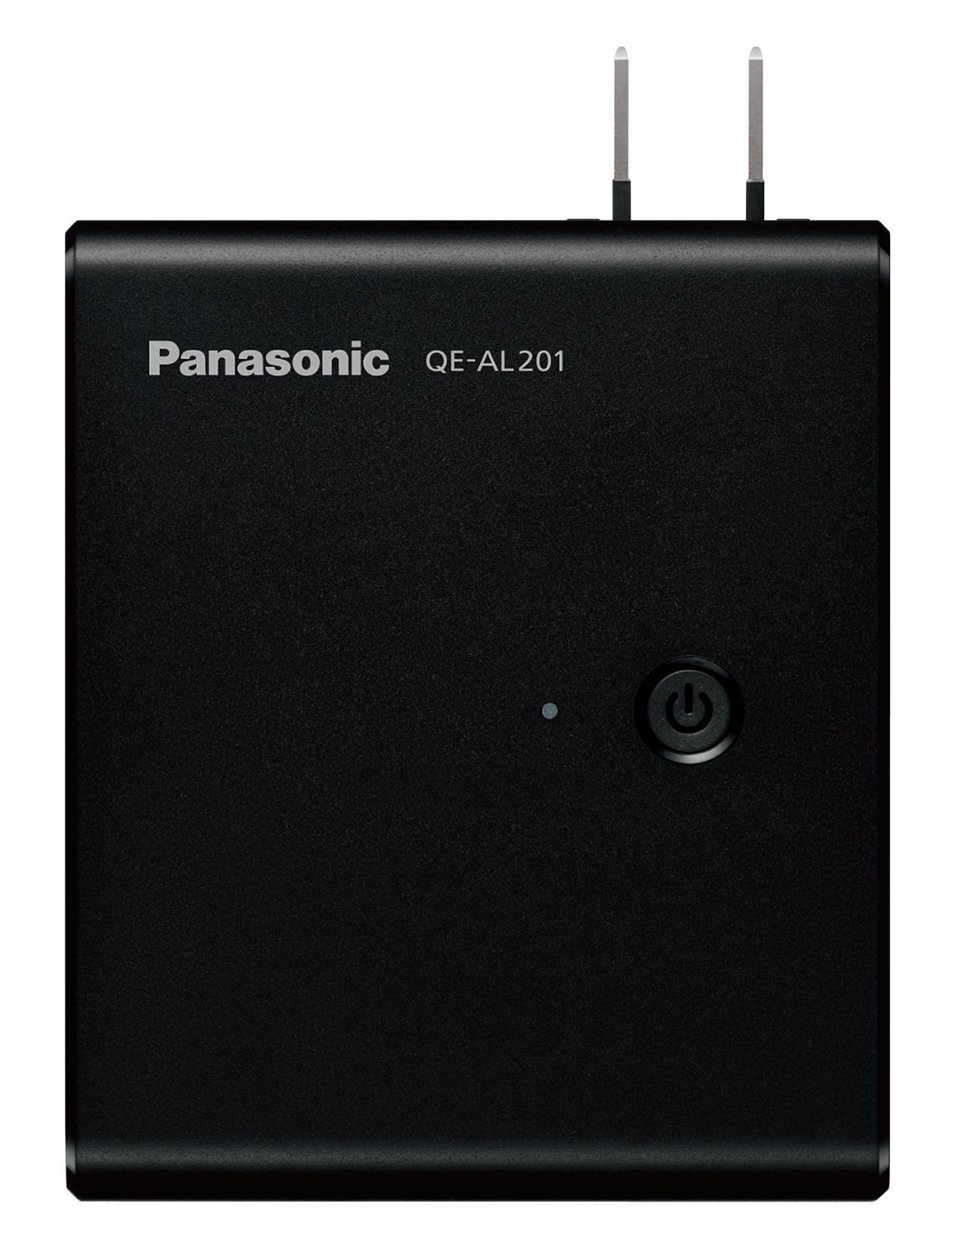 Panasonic Mobile Travel Charger